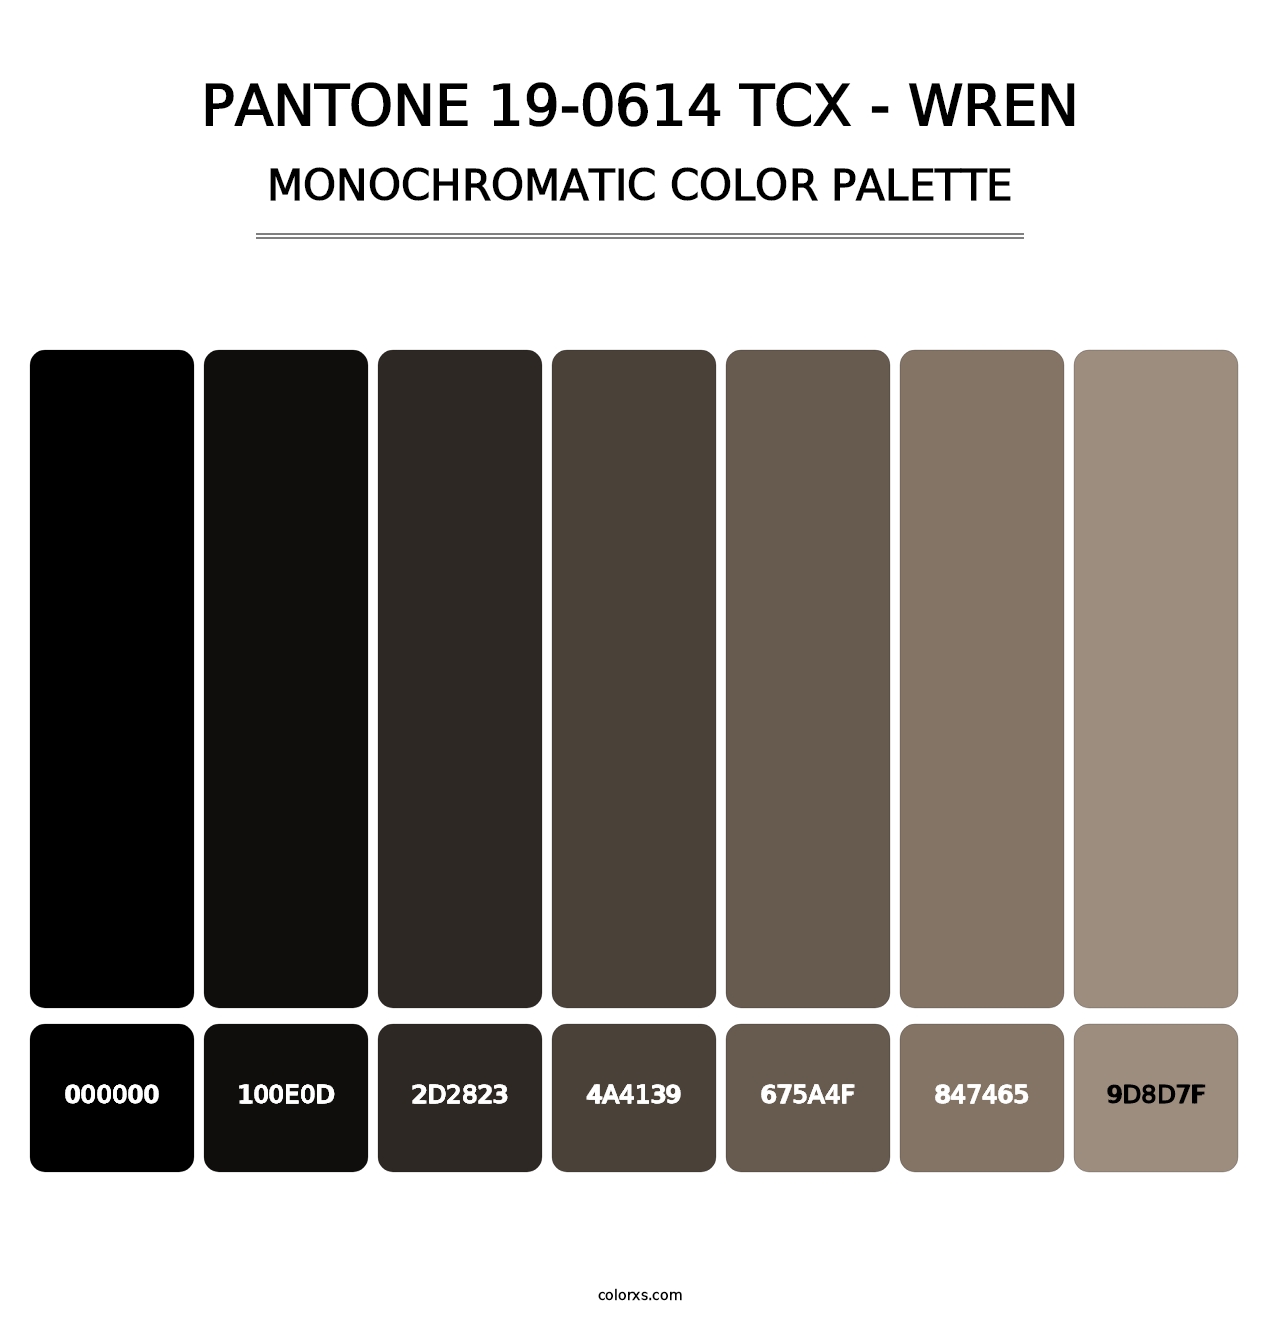 PANTONE 19-0614 TCX - Wren - Monochromatic Color Palette